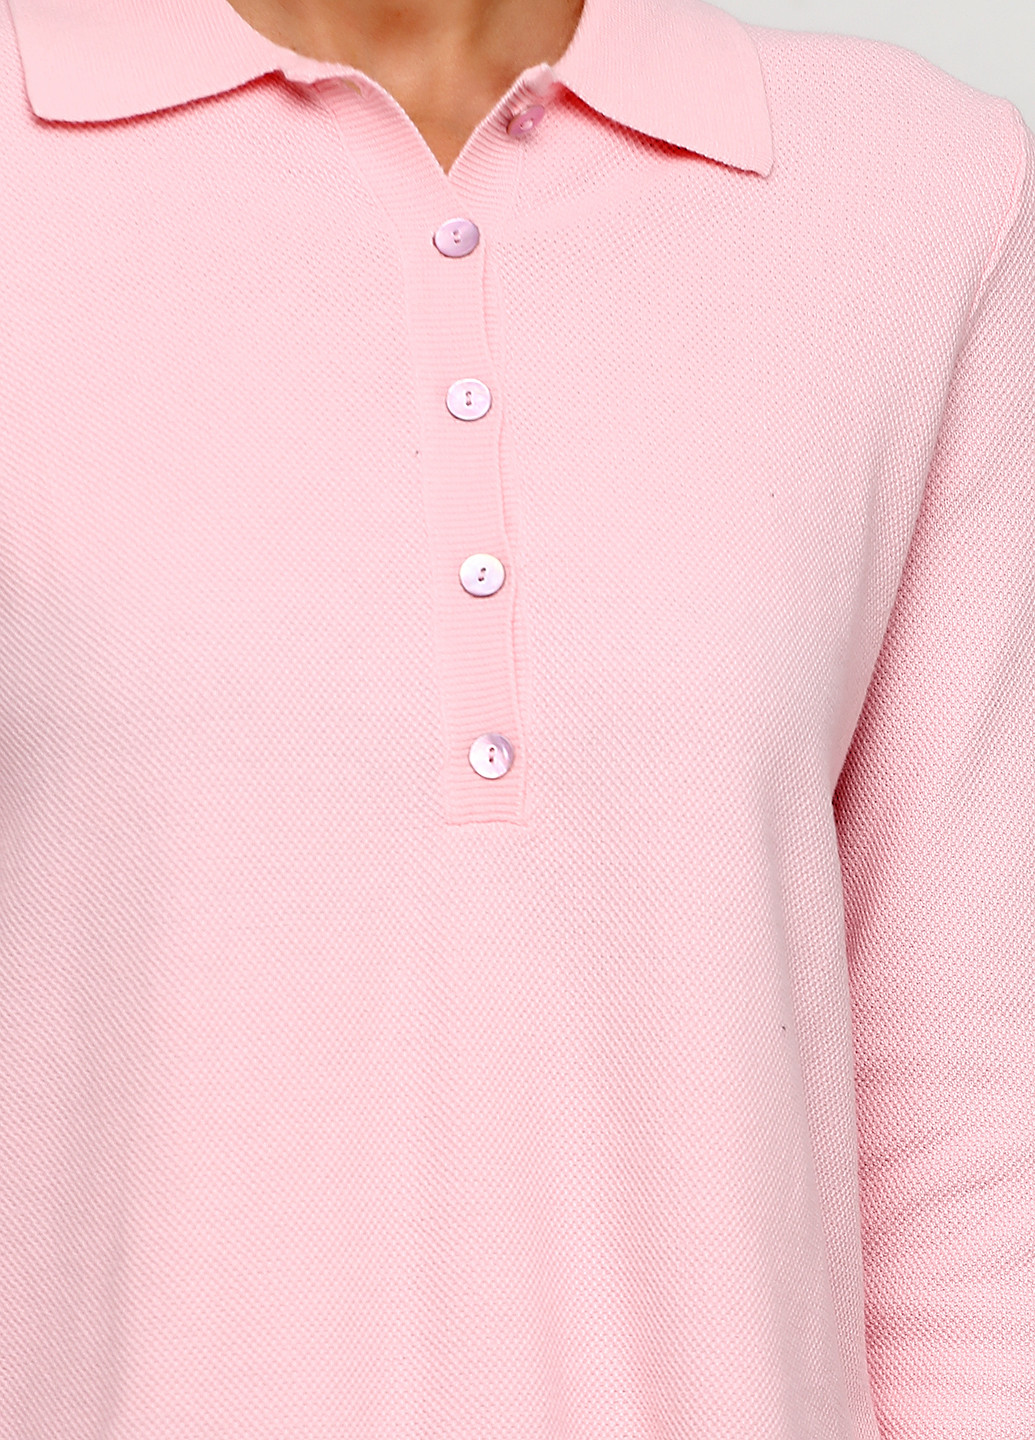 Светло-розовый демисезонный свитер United Colors of Benetton